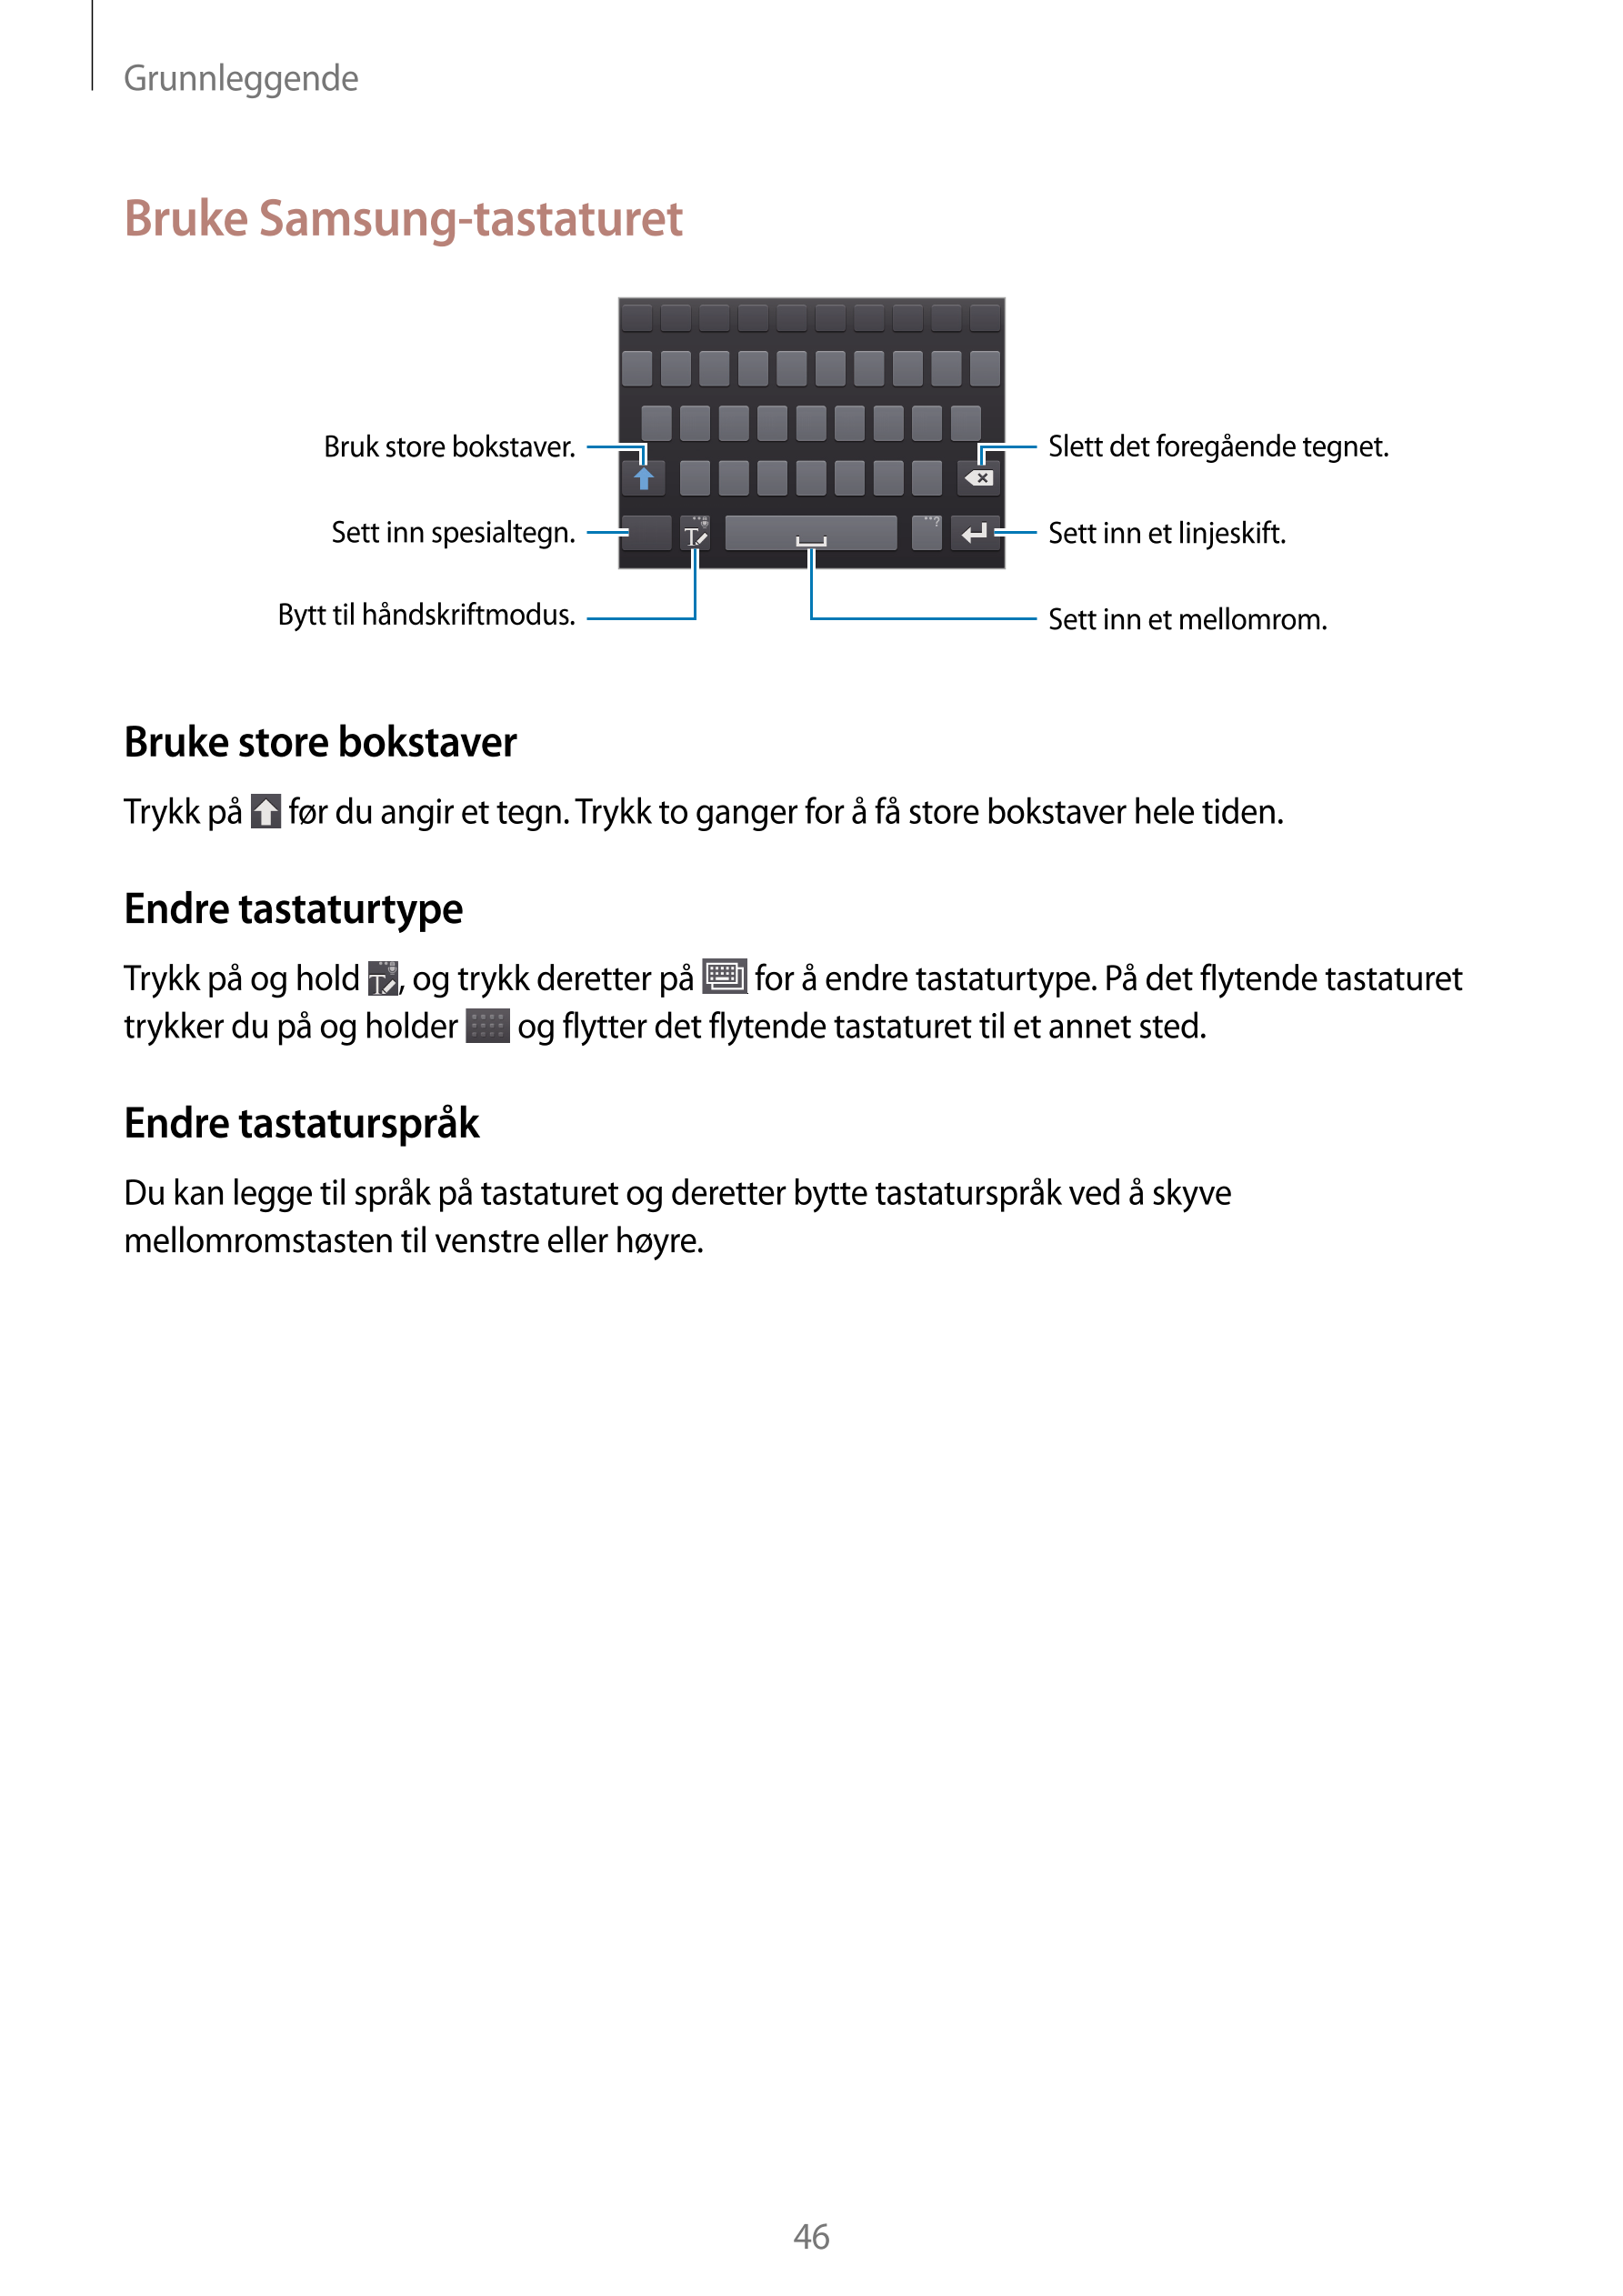 Grunnleggende
Bruke Samsung-tastaturet
Bruk store bokstaver. Slett det foregående tegnet.
Sett inn spesialtegn. Sett inn et linj